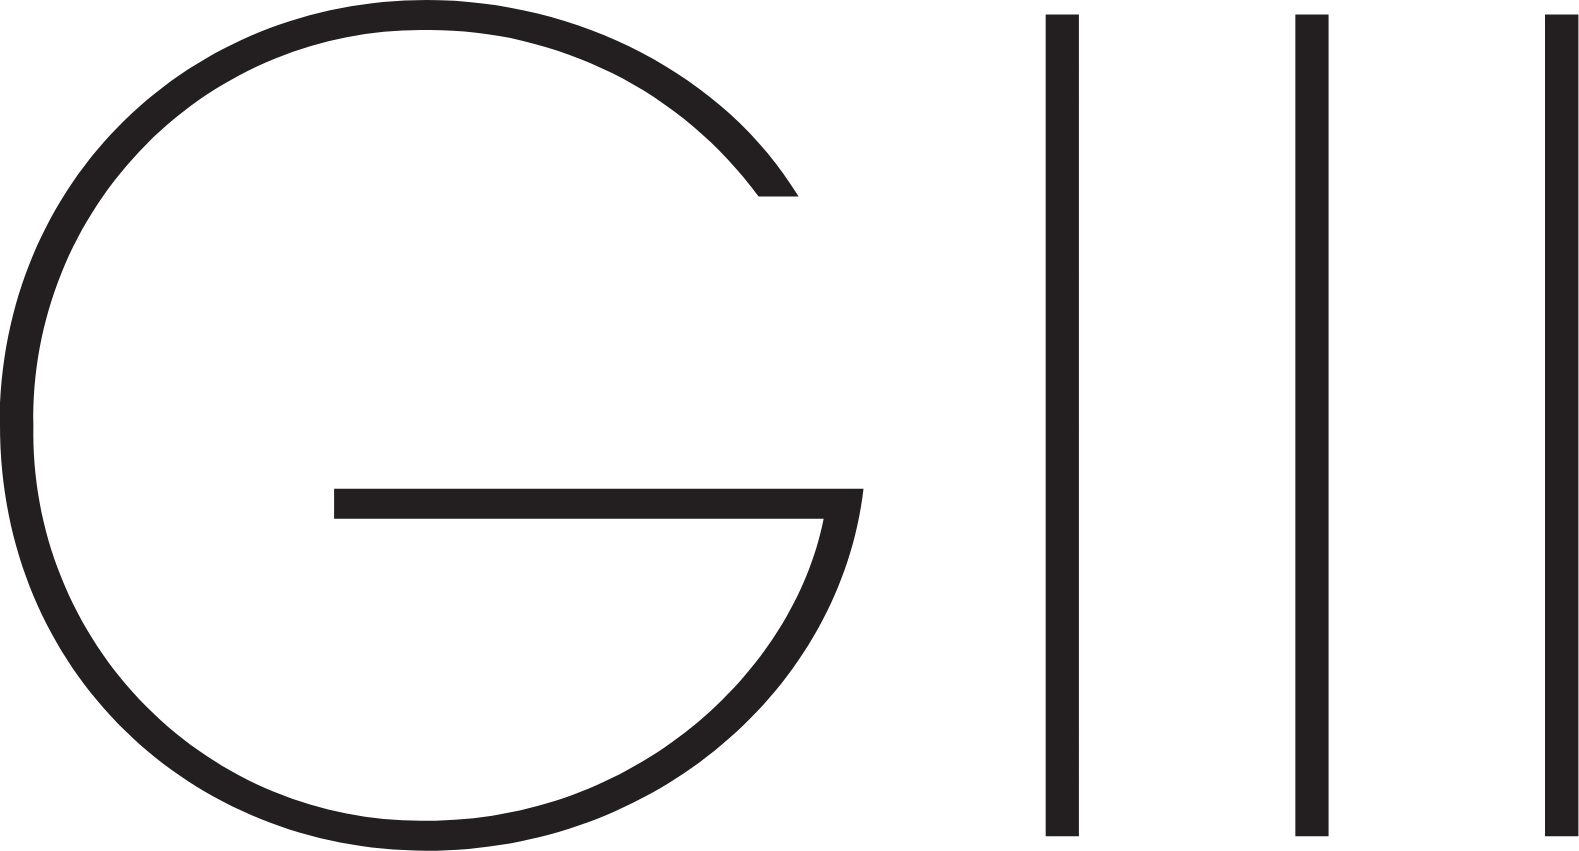 G-III Apparel Group logo (transparent PNG)